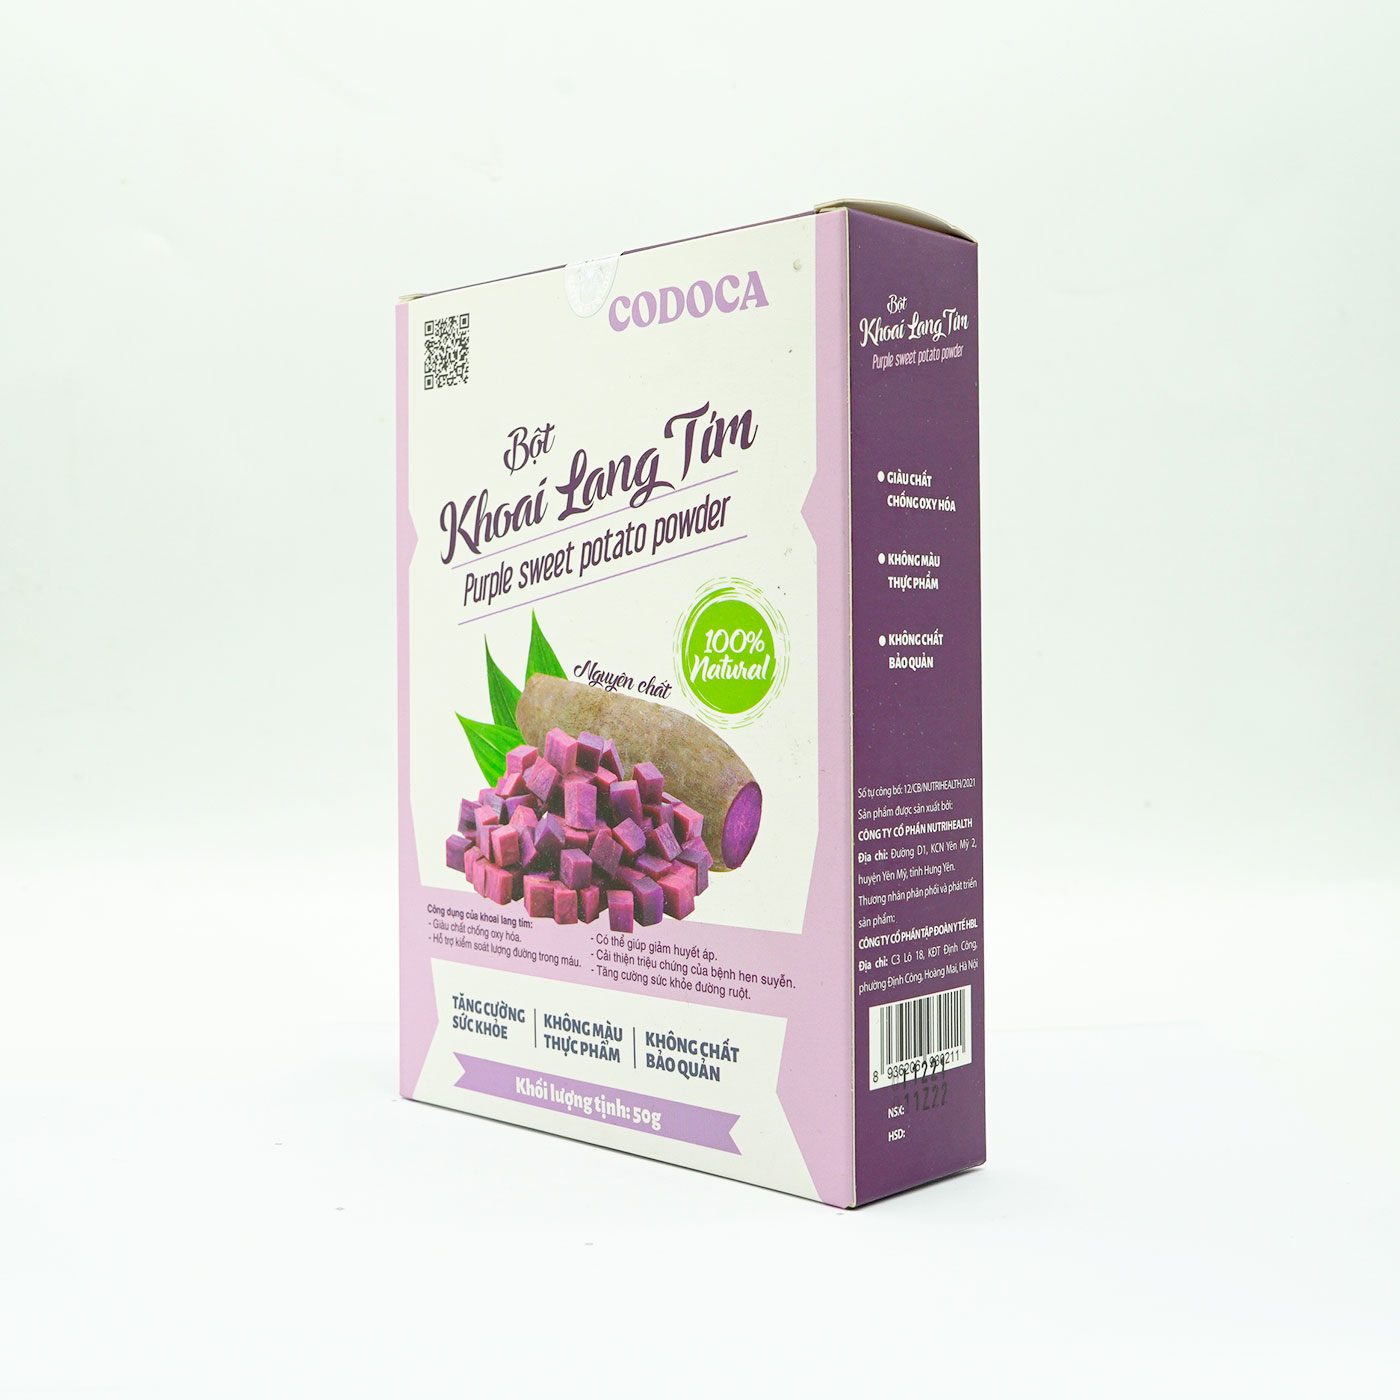 Bột Khoai lang tím Codoca nguyên chất sấy lạnh (50g) Tốt cho sức khỏe, Tạo màu tự nhiên cho thực phẩm